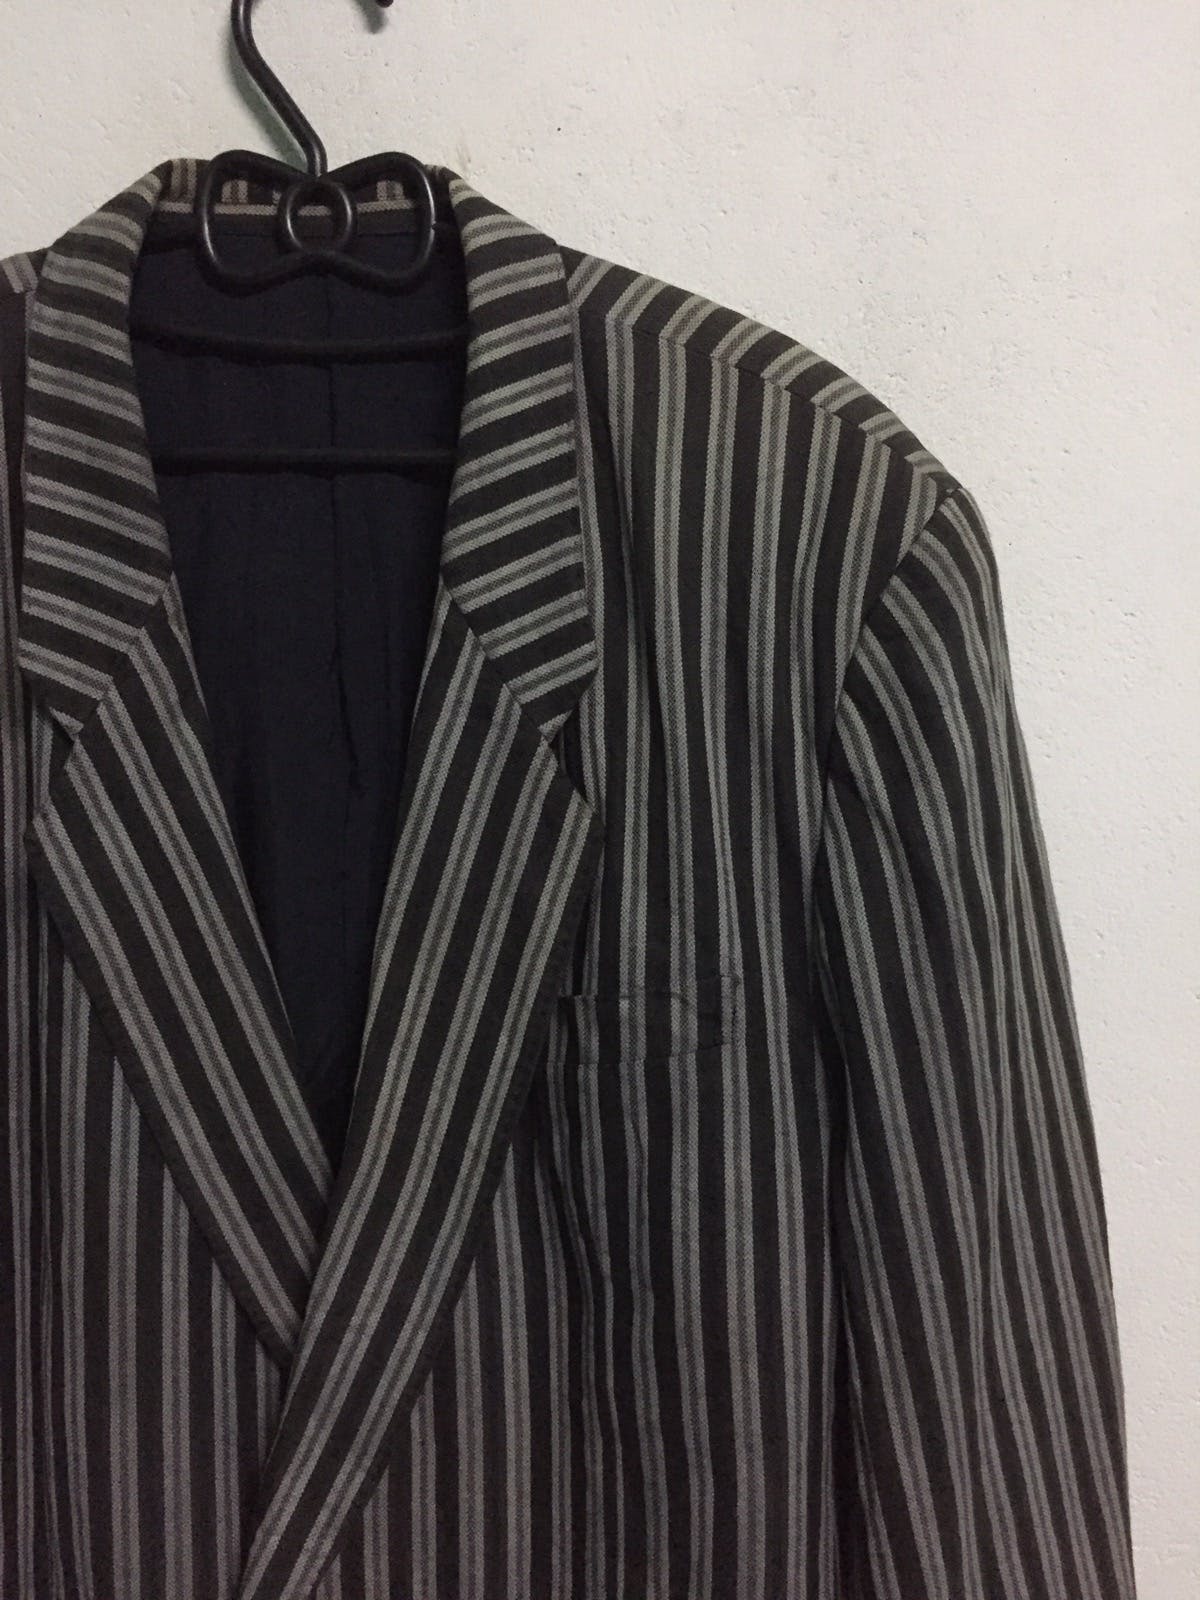 Kenzo Zebra Stripes Jacket Coat Made in Japan - 2